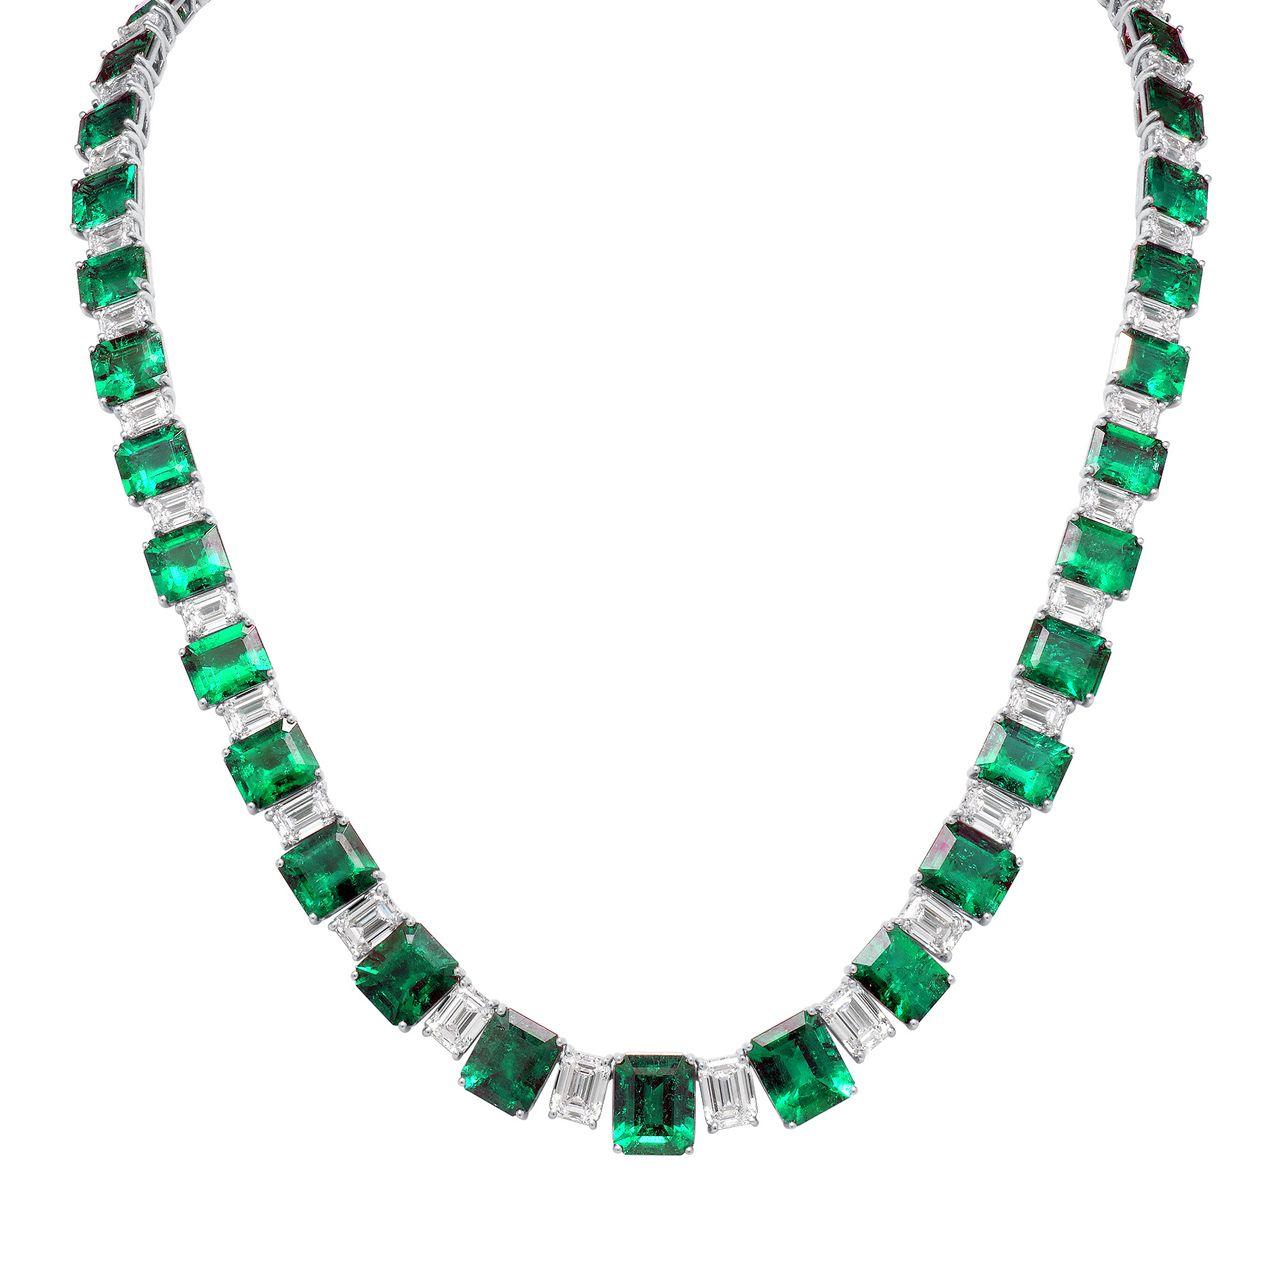 Collier d'émeraudes colombiennes exquises : Un véritable chef-d'œuvre d'Elegance et de Luxe !

Ce superbe collier présente un éventail époustouflant d'émeraudes de Colombie, totalisant un impressionnant 55 carats, accompagnées de diamants